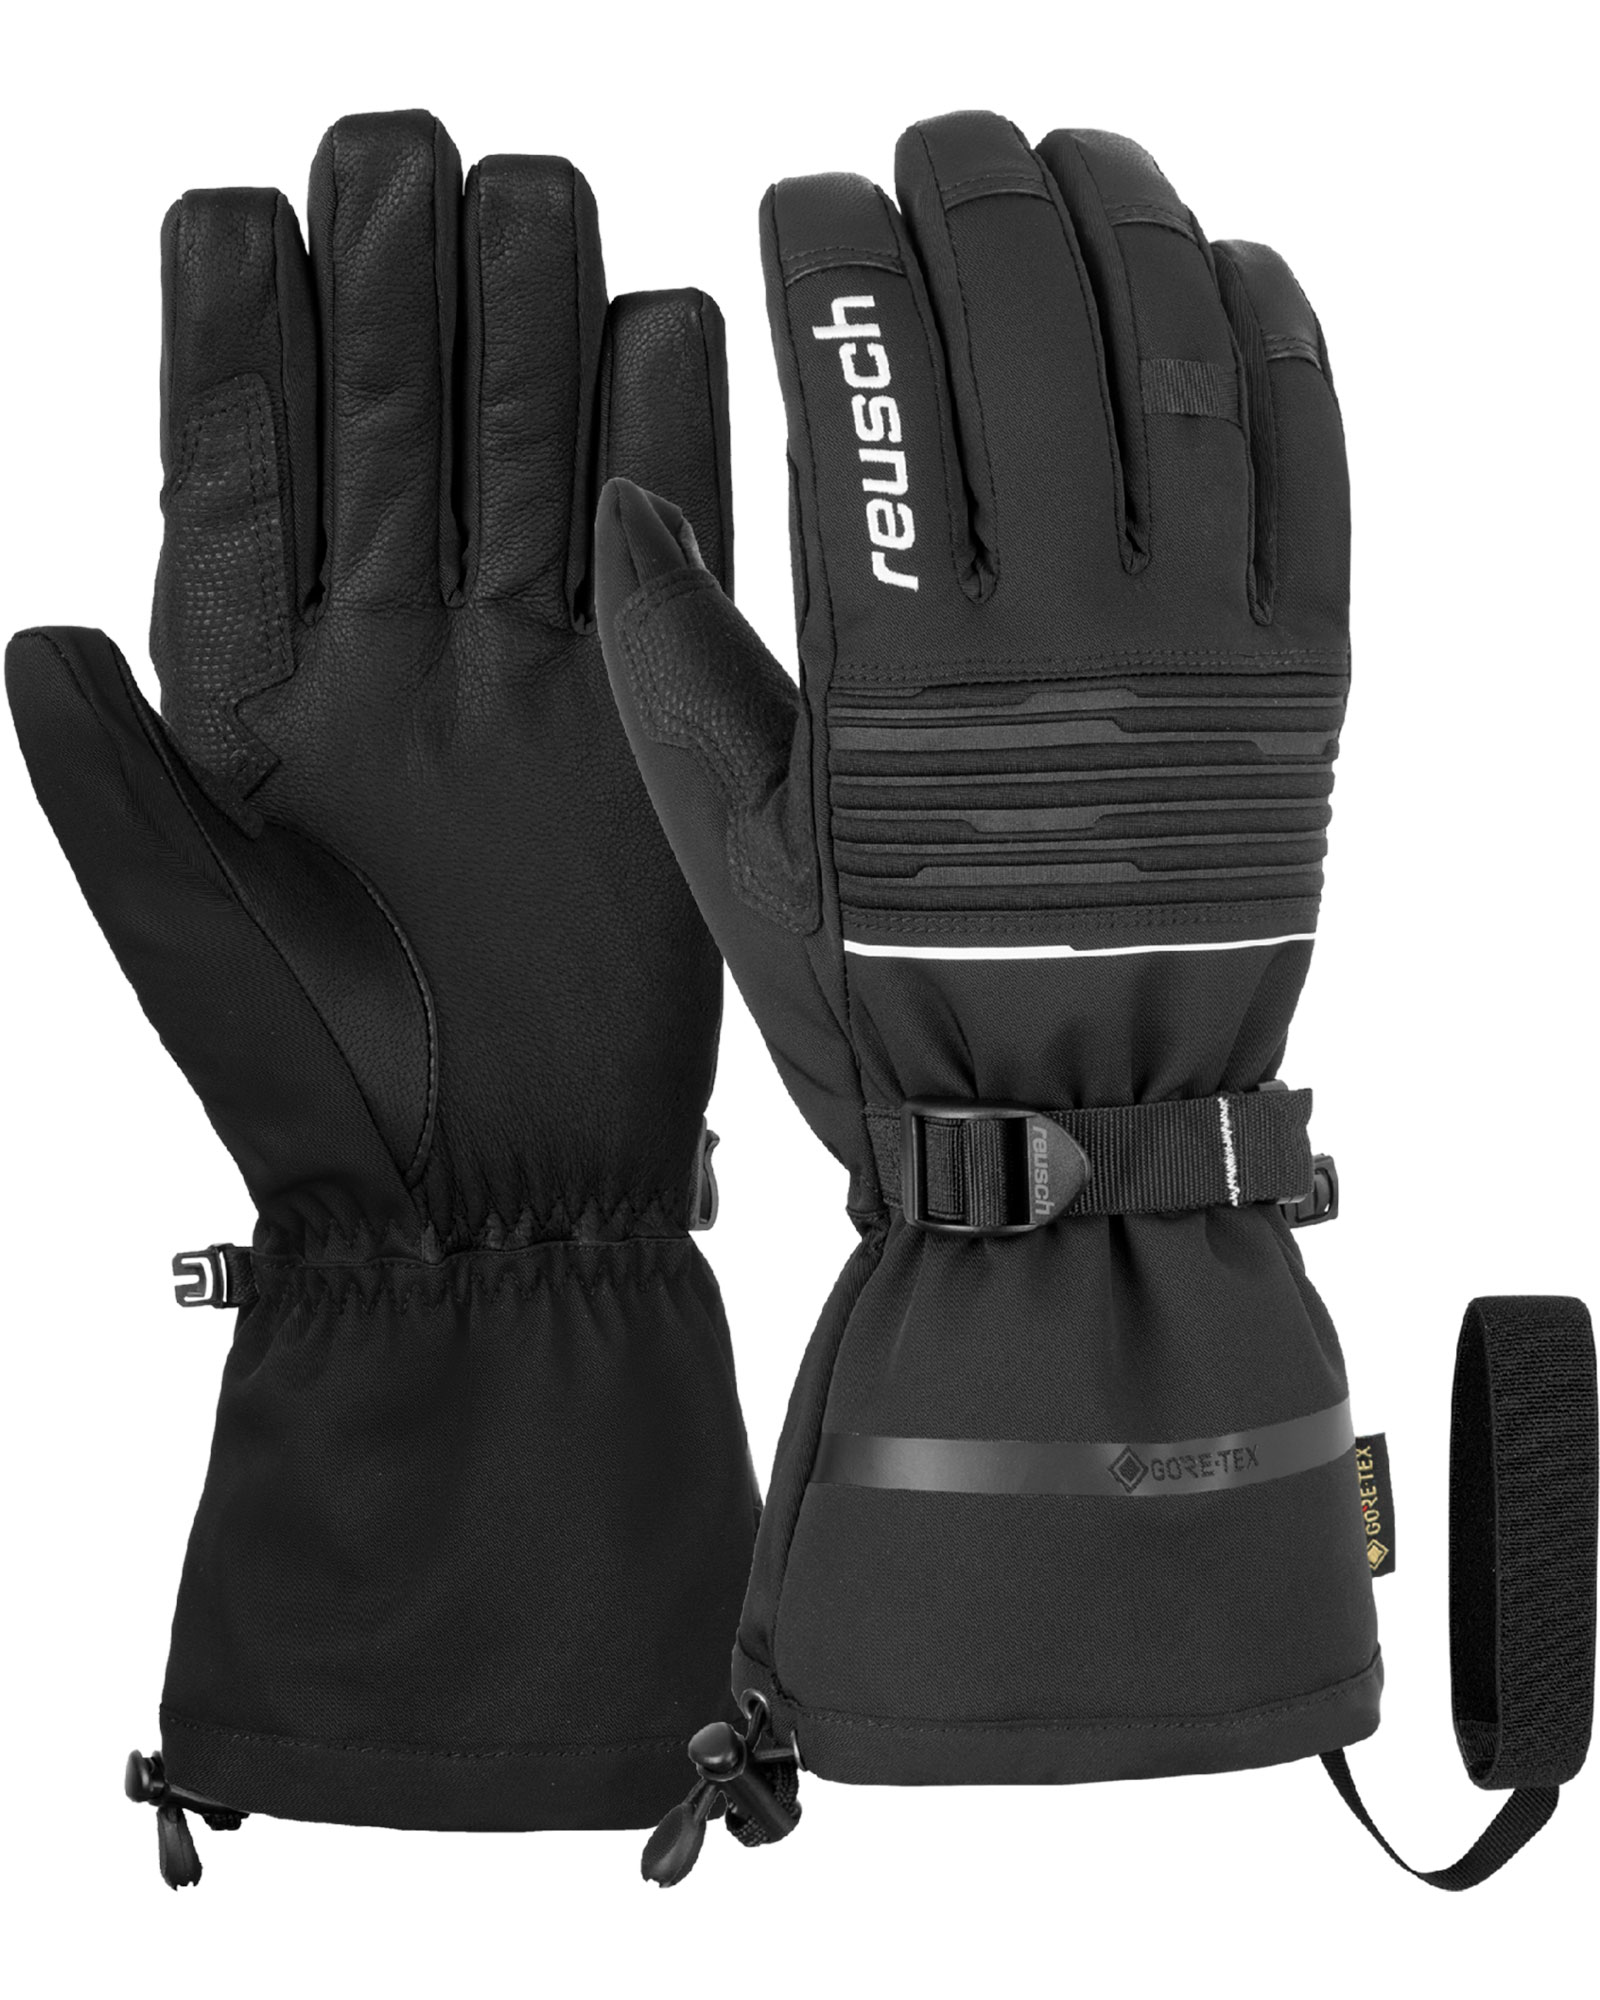 Reusch Isidro GORE TEX Men’s Gloves - Black/white Size 10